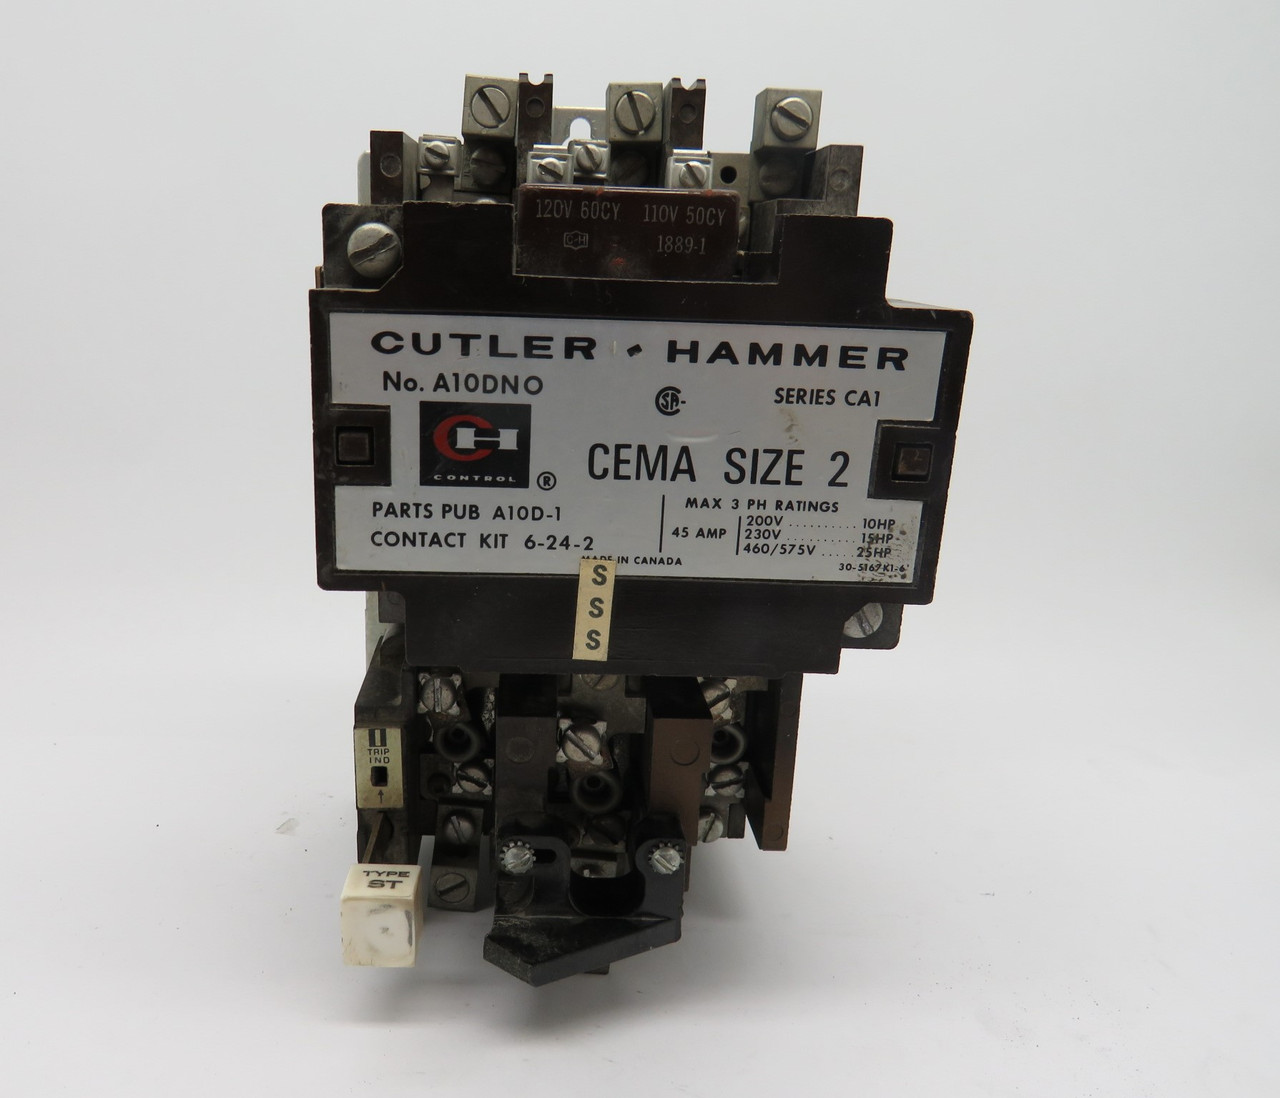 Cutler-Hammer A10DN0 Ser CA1 Motor Starter 460/575V 45A 25HP 3Ph USED